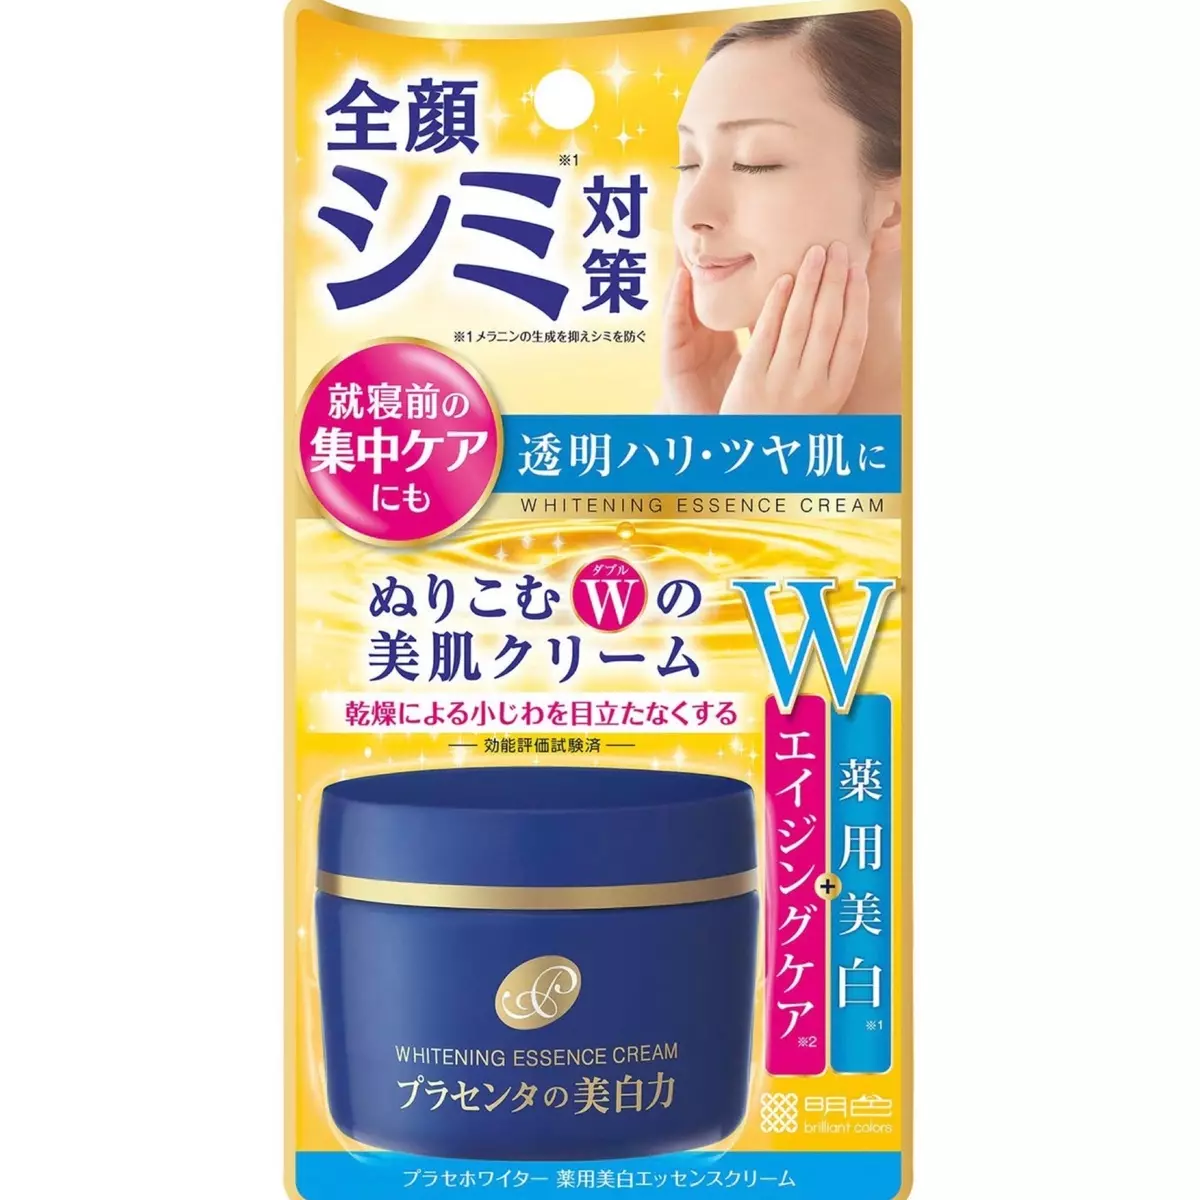 Cosméticos japoneses: mejores marcas de cosméticos de Japón. Rosette, Kose y otros cosméticos profesionales. Revisiones de Cosmetólogos 4498_14